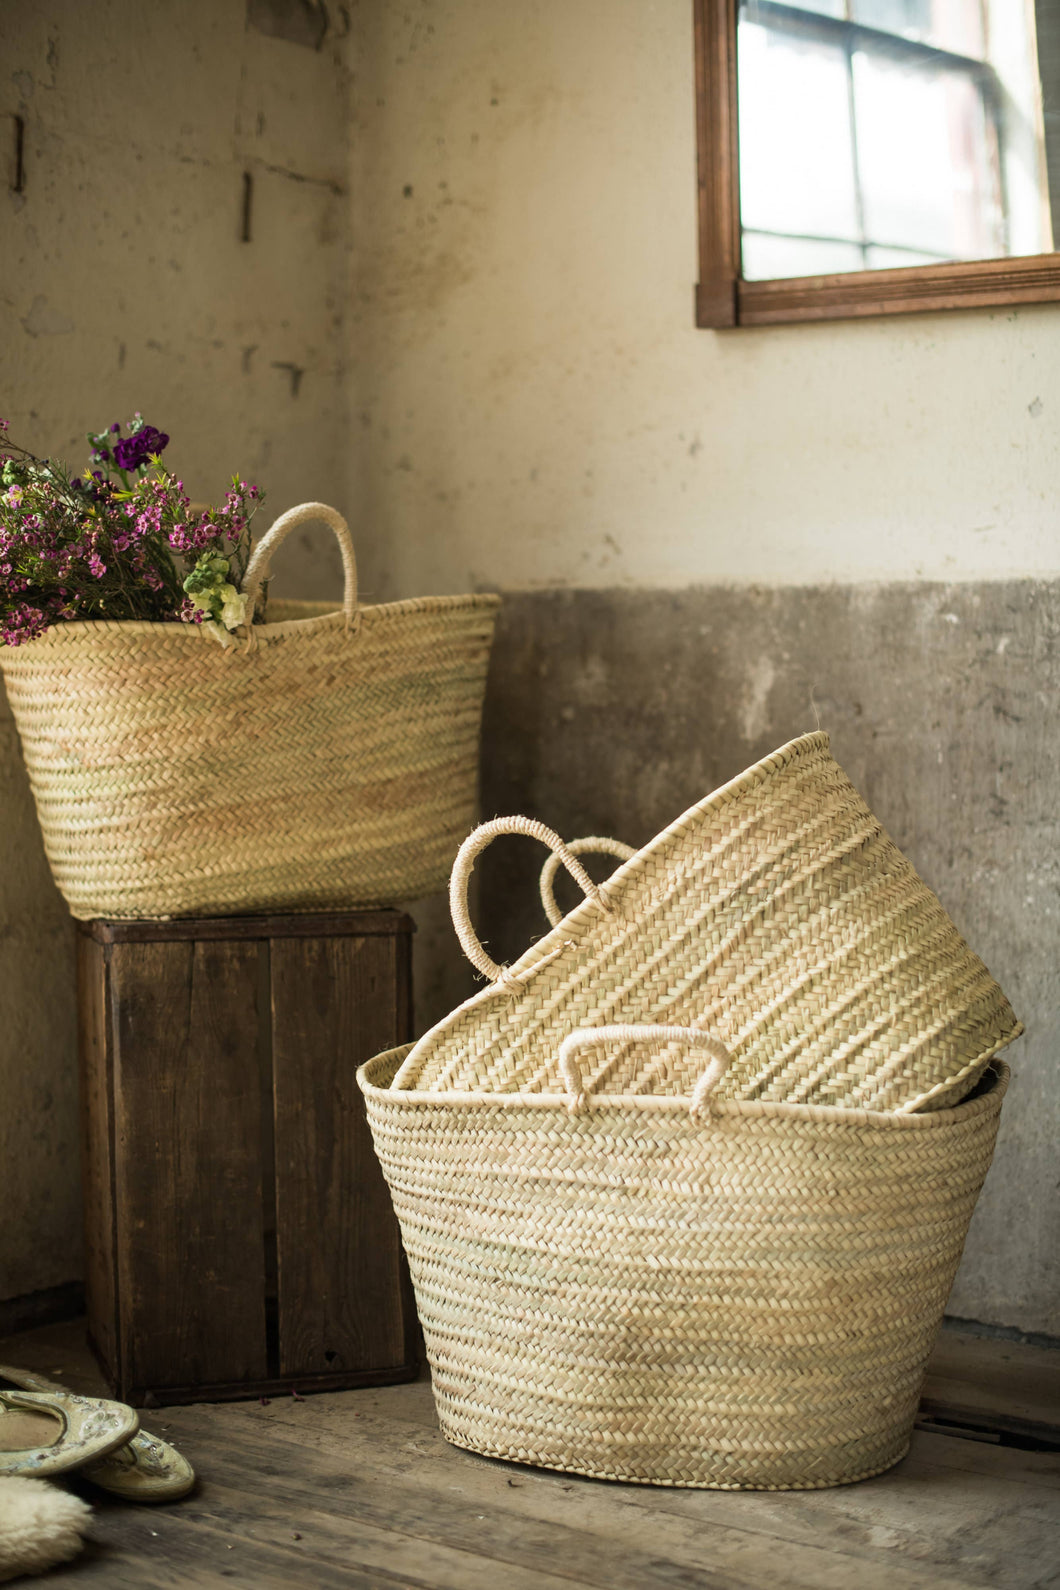 Sisal handled baskets - Small